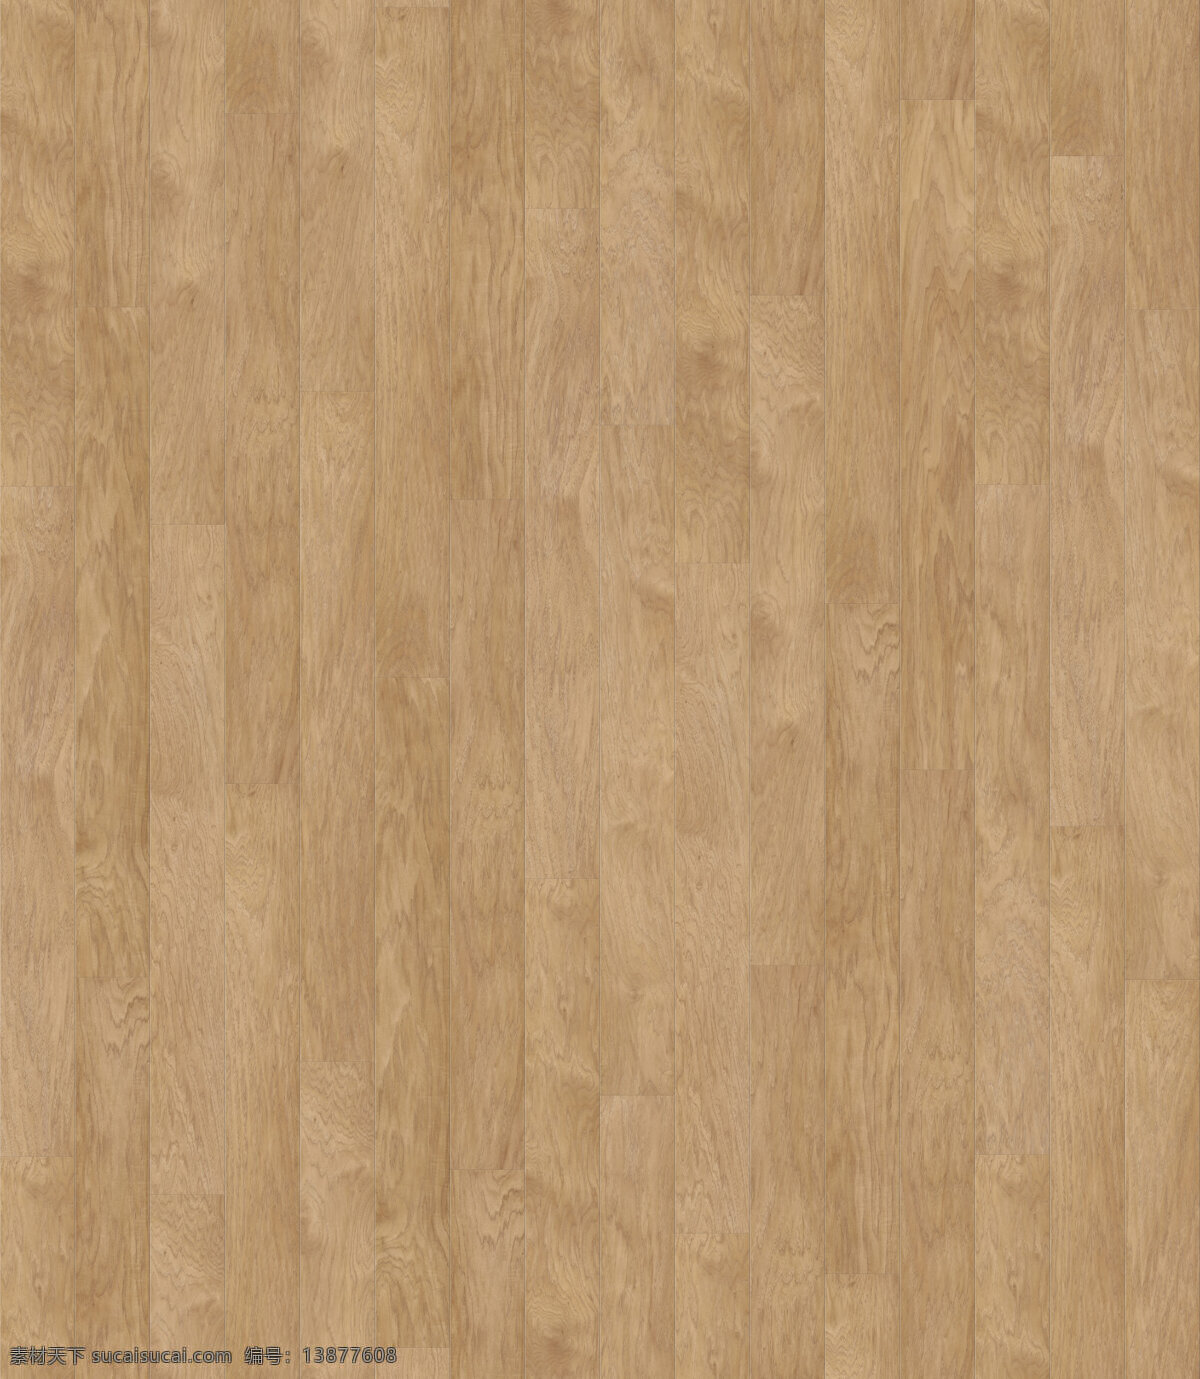 室内 家装 现代 木地板 材质 贴图 实木地板贴图 素材贴图 素材设计 3d贴图图片 现代风格 书籍 背景 墙 地板 客厅 通用